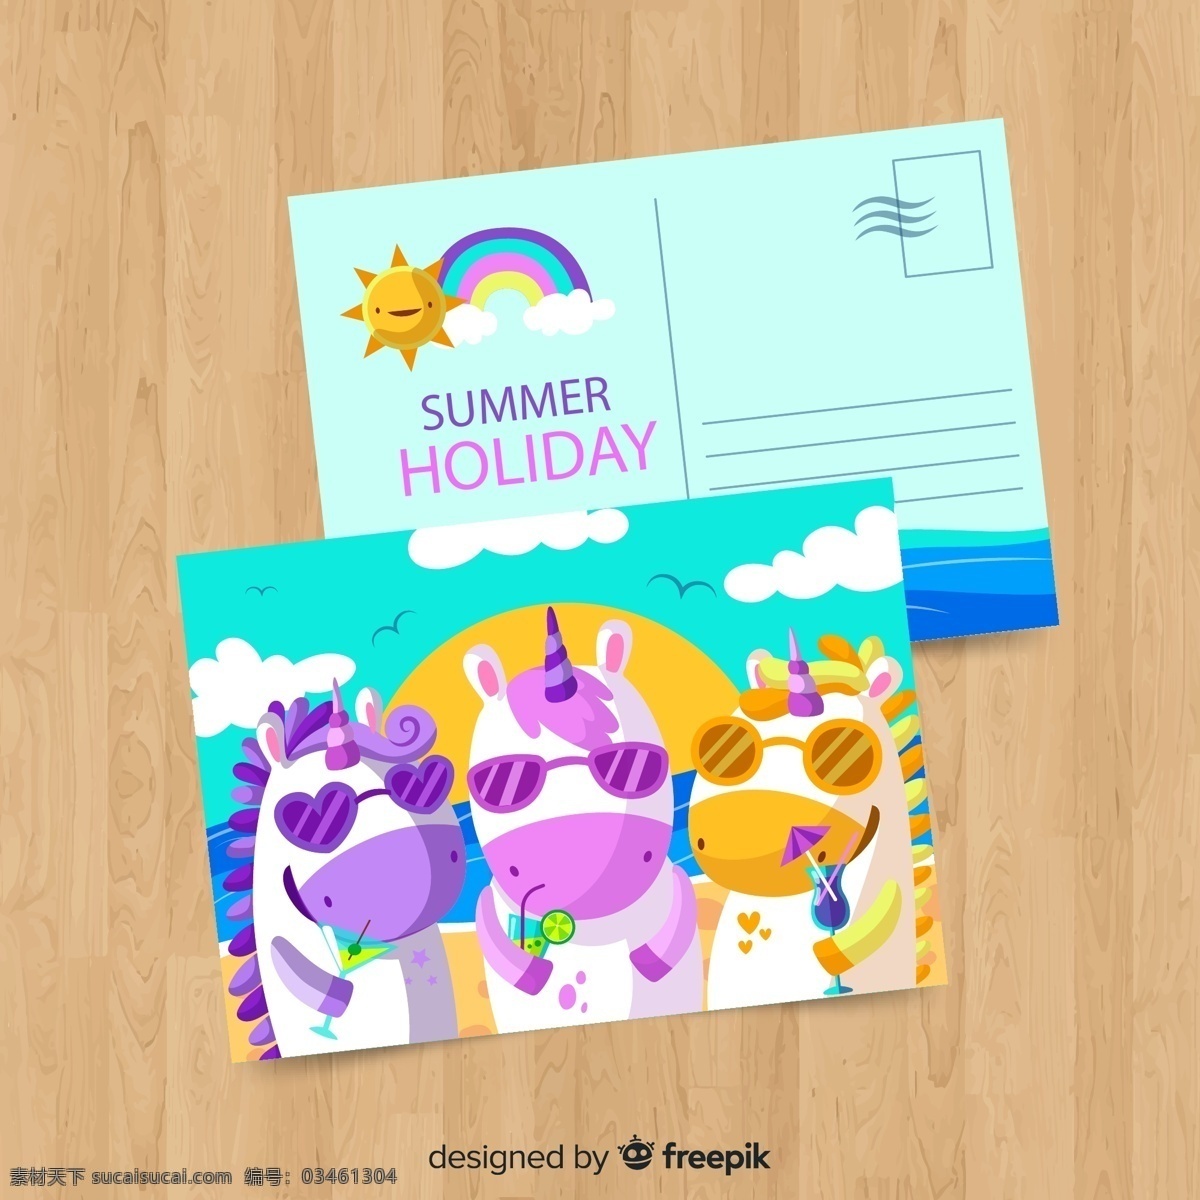 独角兽 夏季 明信片 太阳 彩虹 云朵 木板 大海 卡通 矢量 高清图片